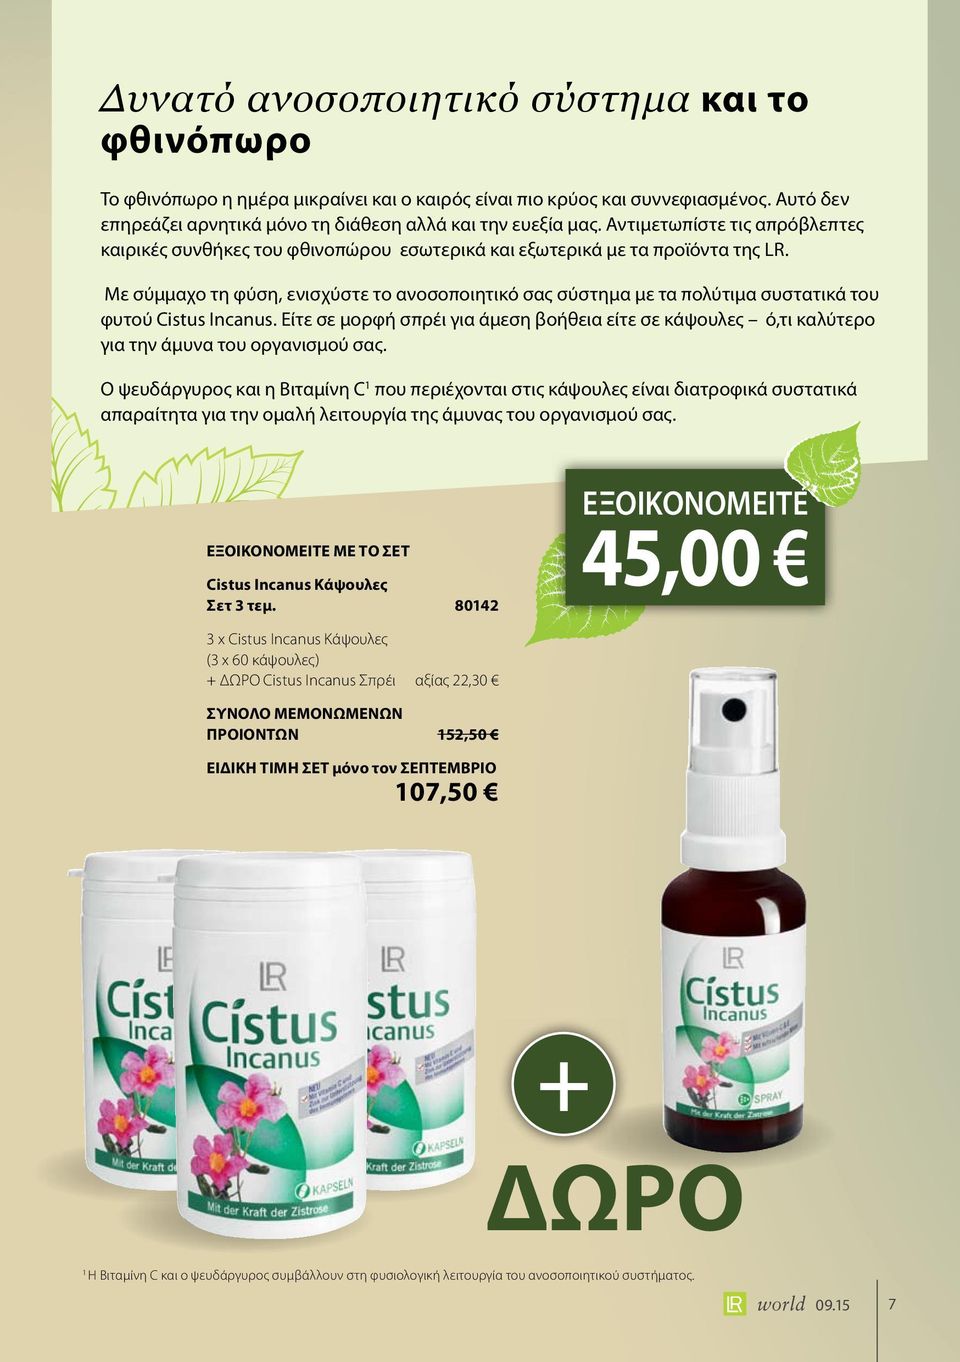 Με σύμμαχο τη φύση, ενισχύστε το ανοσοποιητικό σας σύστημα με τα πολύτιμα συστατικά του φυτού Cistus Incanus.